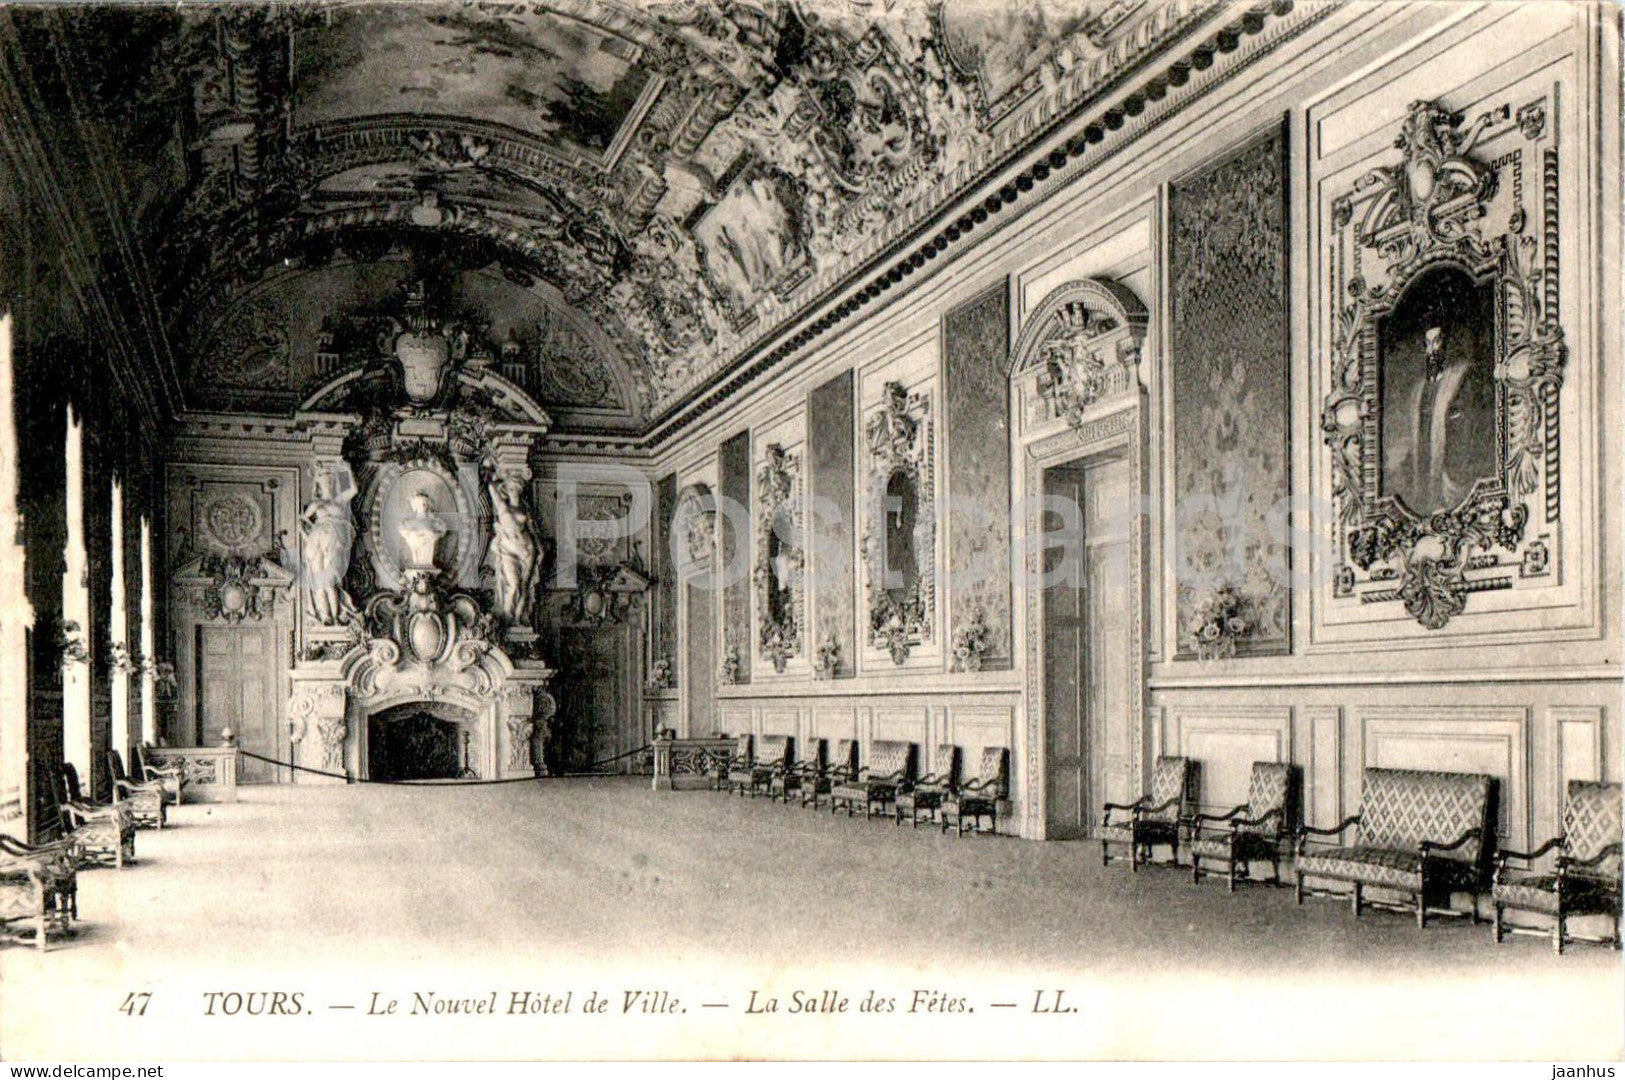 Tours - Le Nouvel Hotel de Ville - La Salle des Fetes - 47 - old postcard - 1919 - France - used - JH Postcards